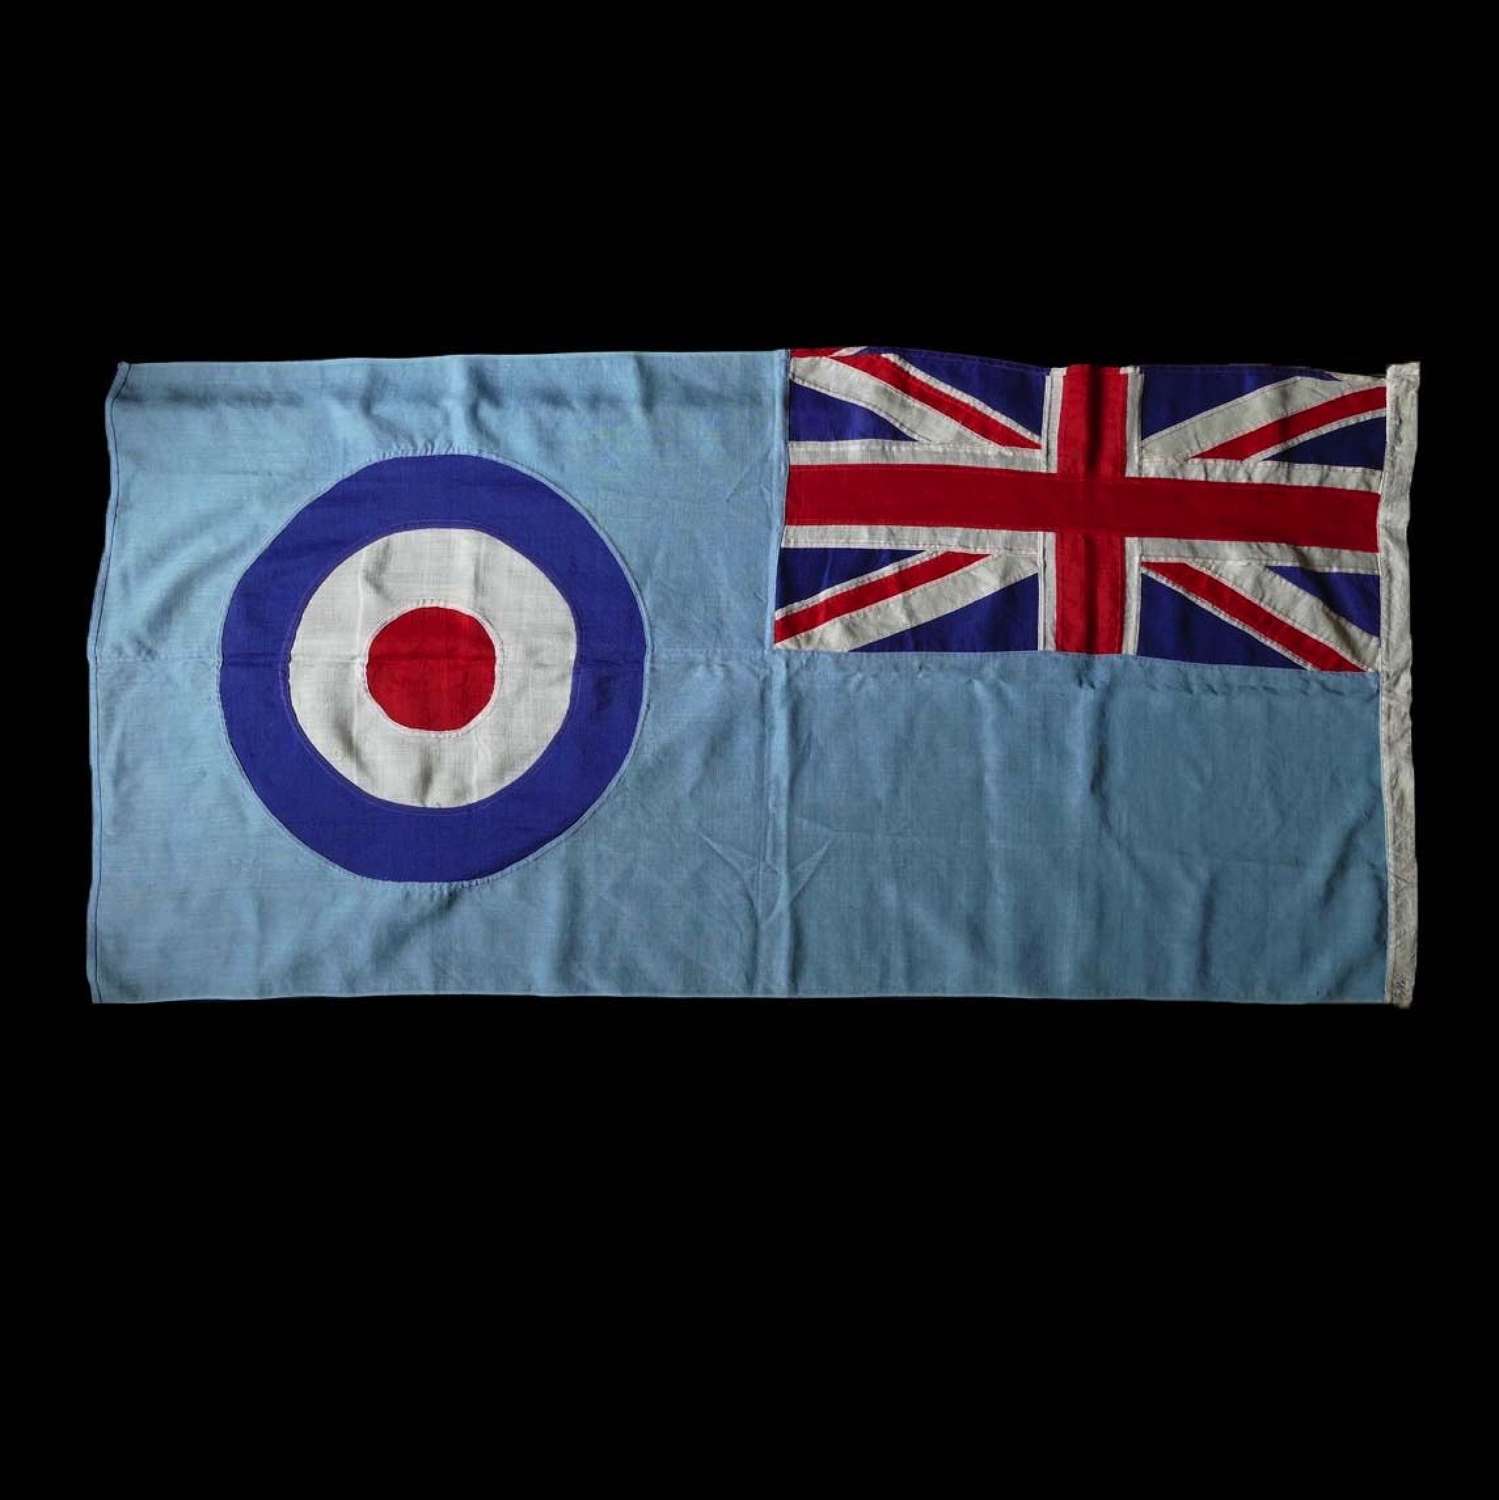 RAF station ensign